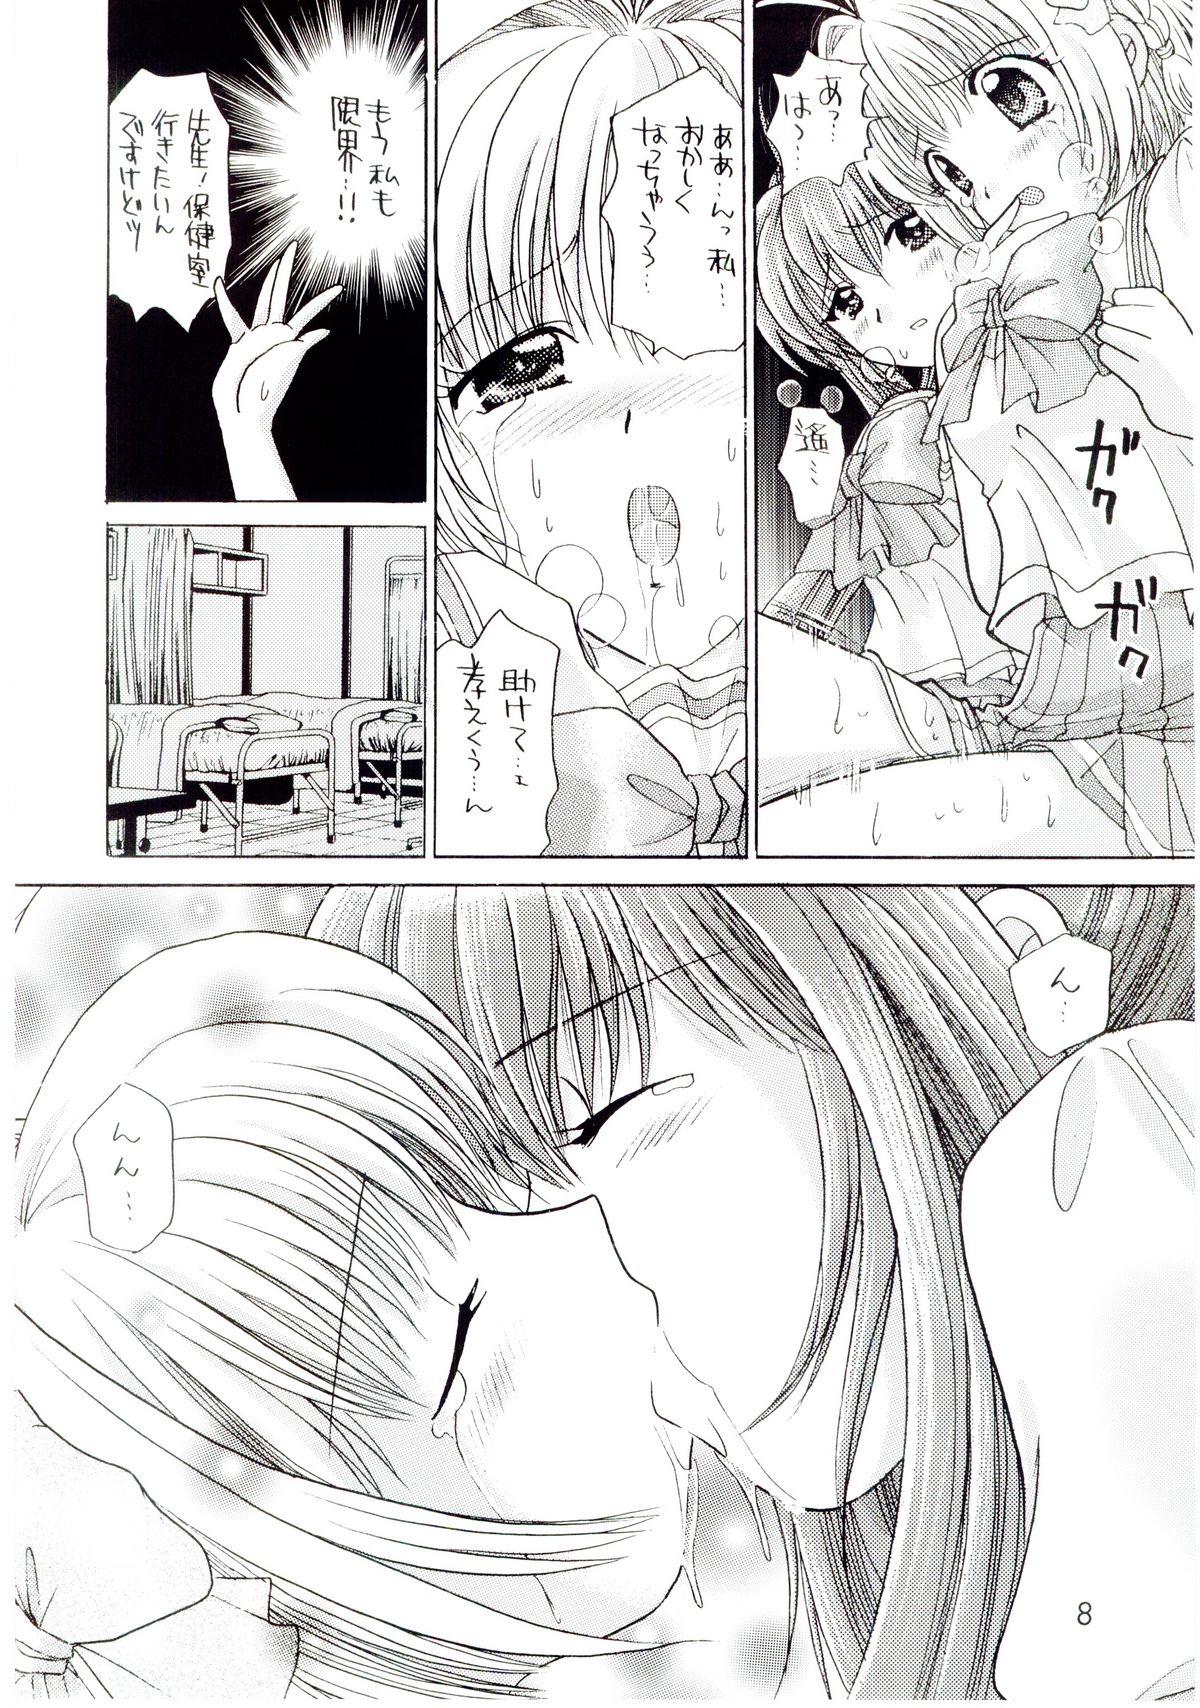 Eat Kimi ga nozomu eien zettai zetsumei 2 - Kimi ga nozomu eien Gay Kissing - Page 7